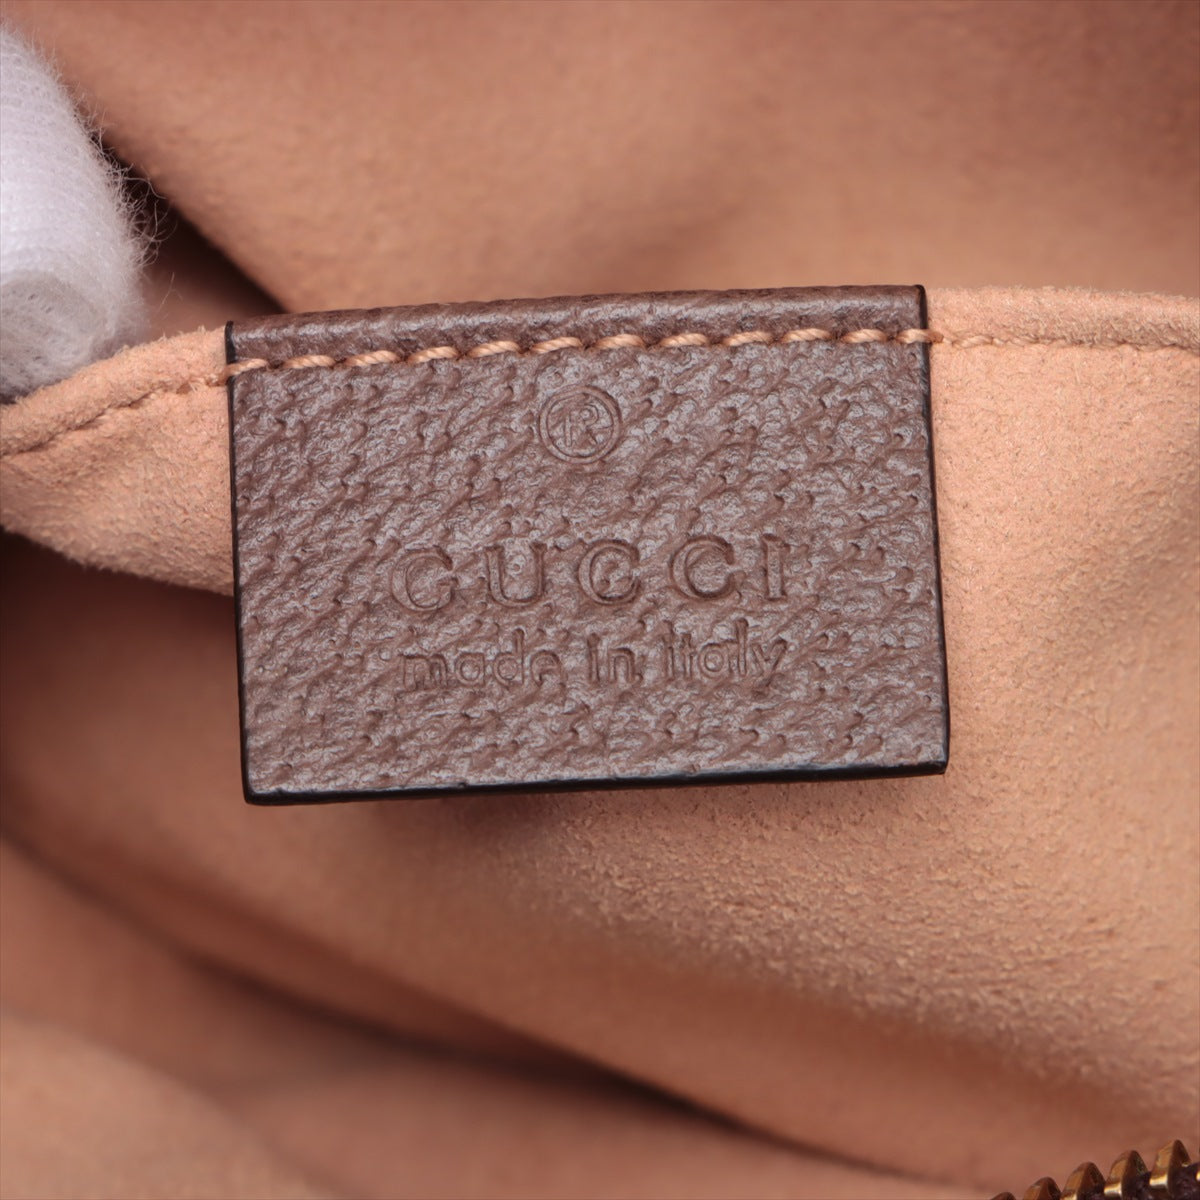 Gucci GG Supreme Ophidia Shoulder Bag Brown 517350